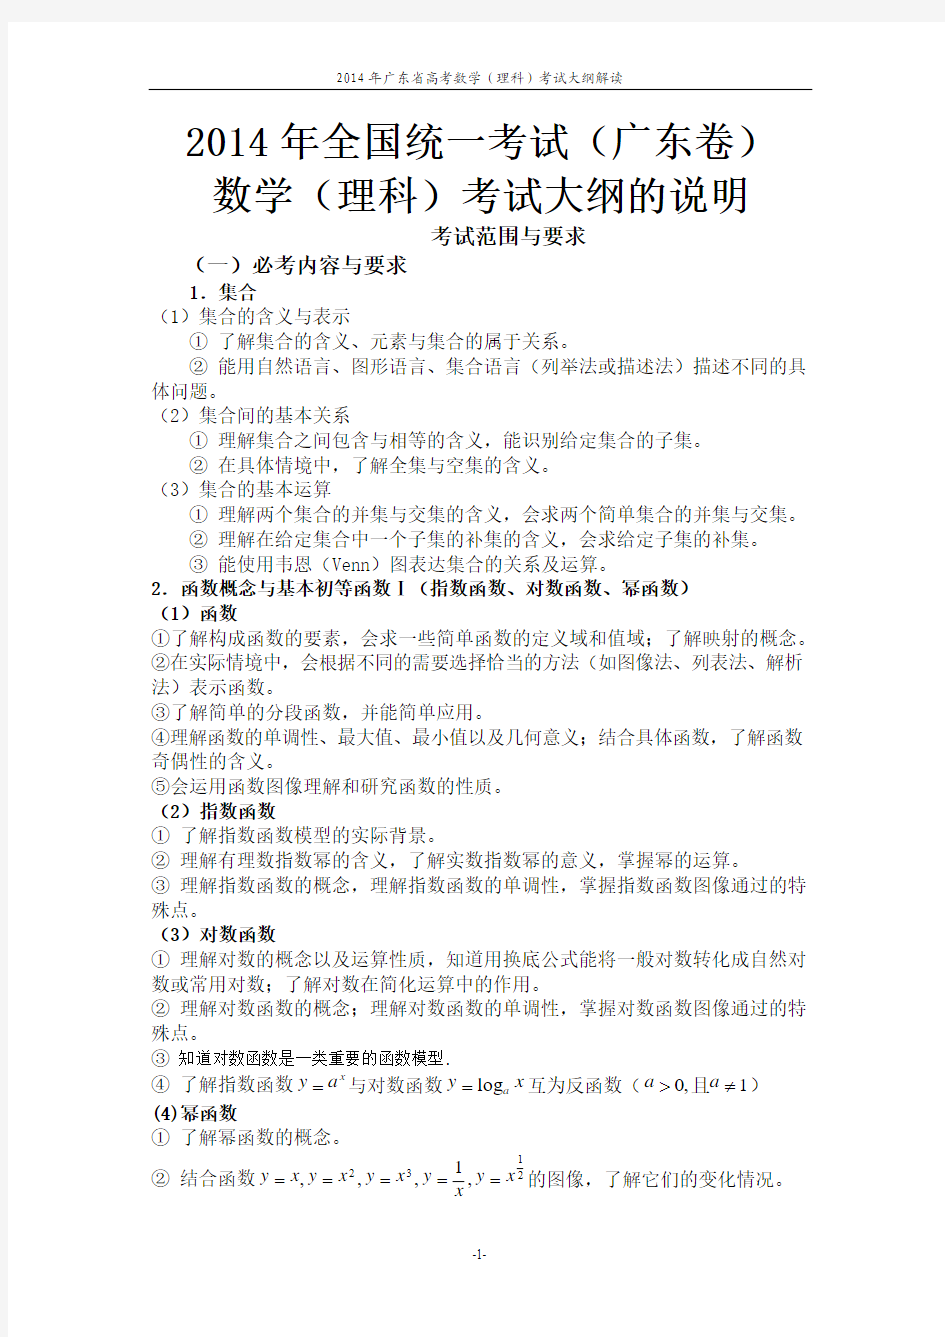 2014年广东省高考数学(理科)考试大纲的说明